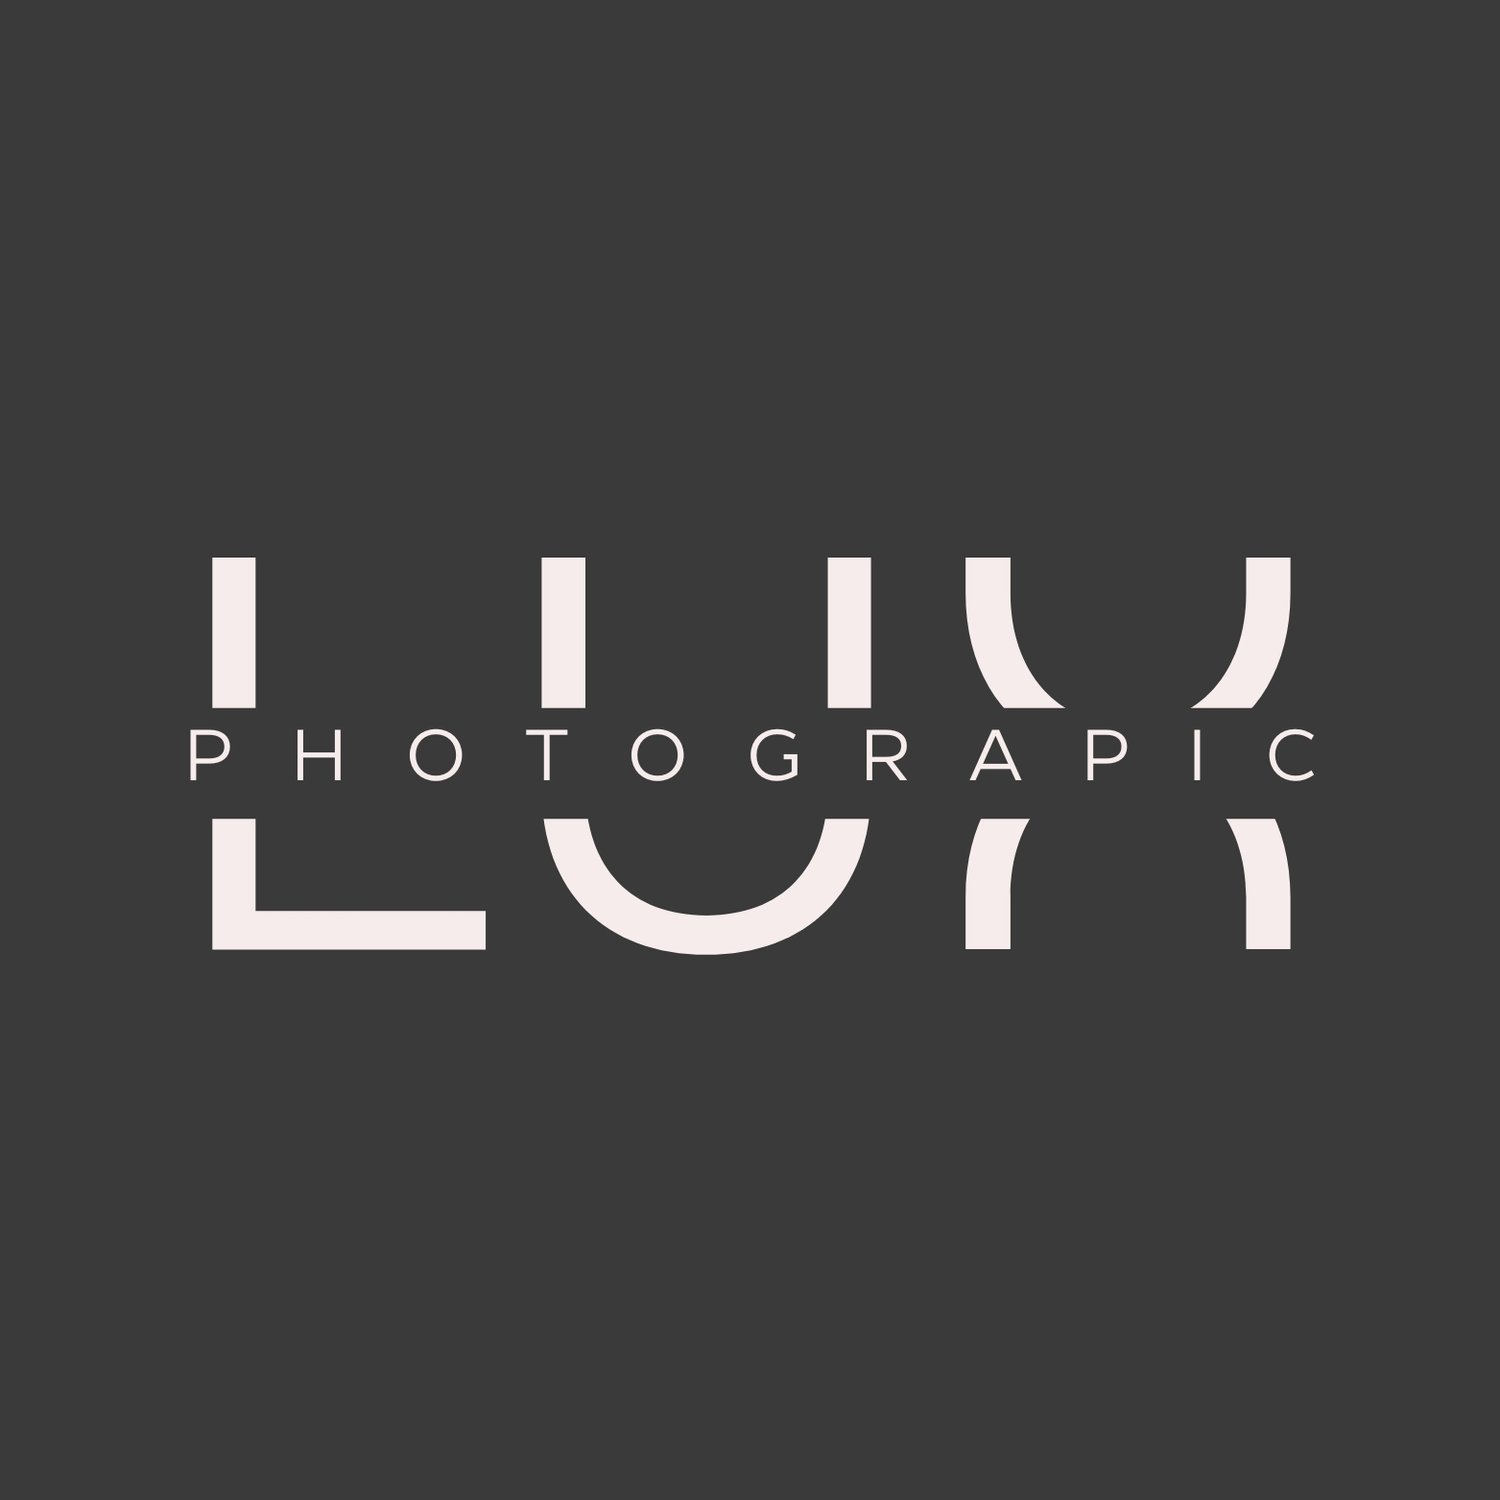 Lux Photographic